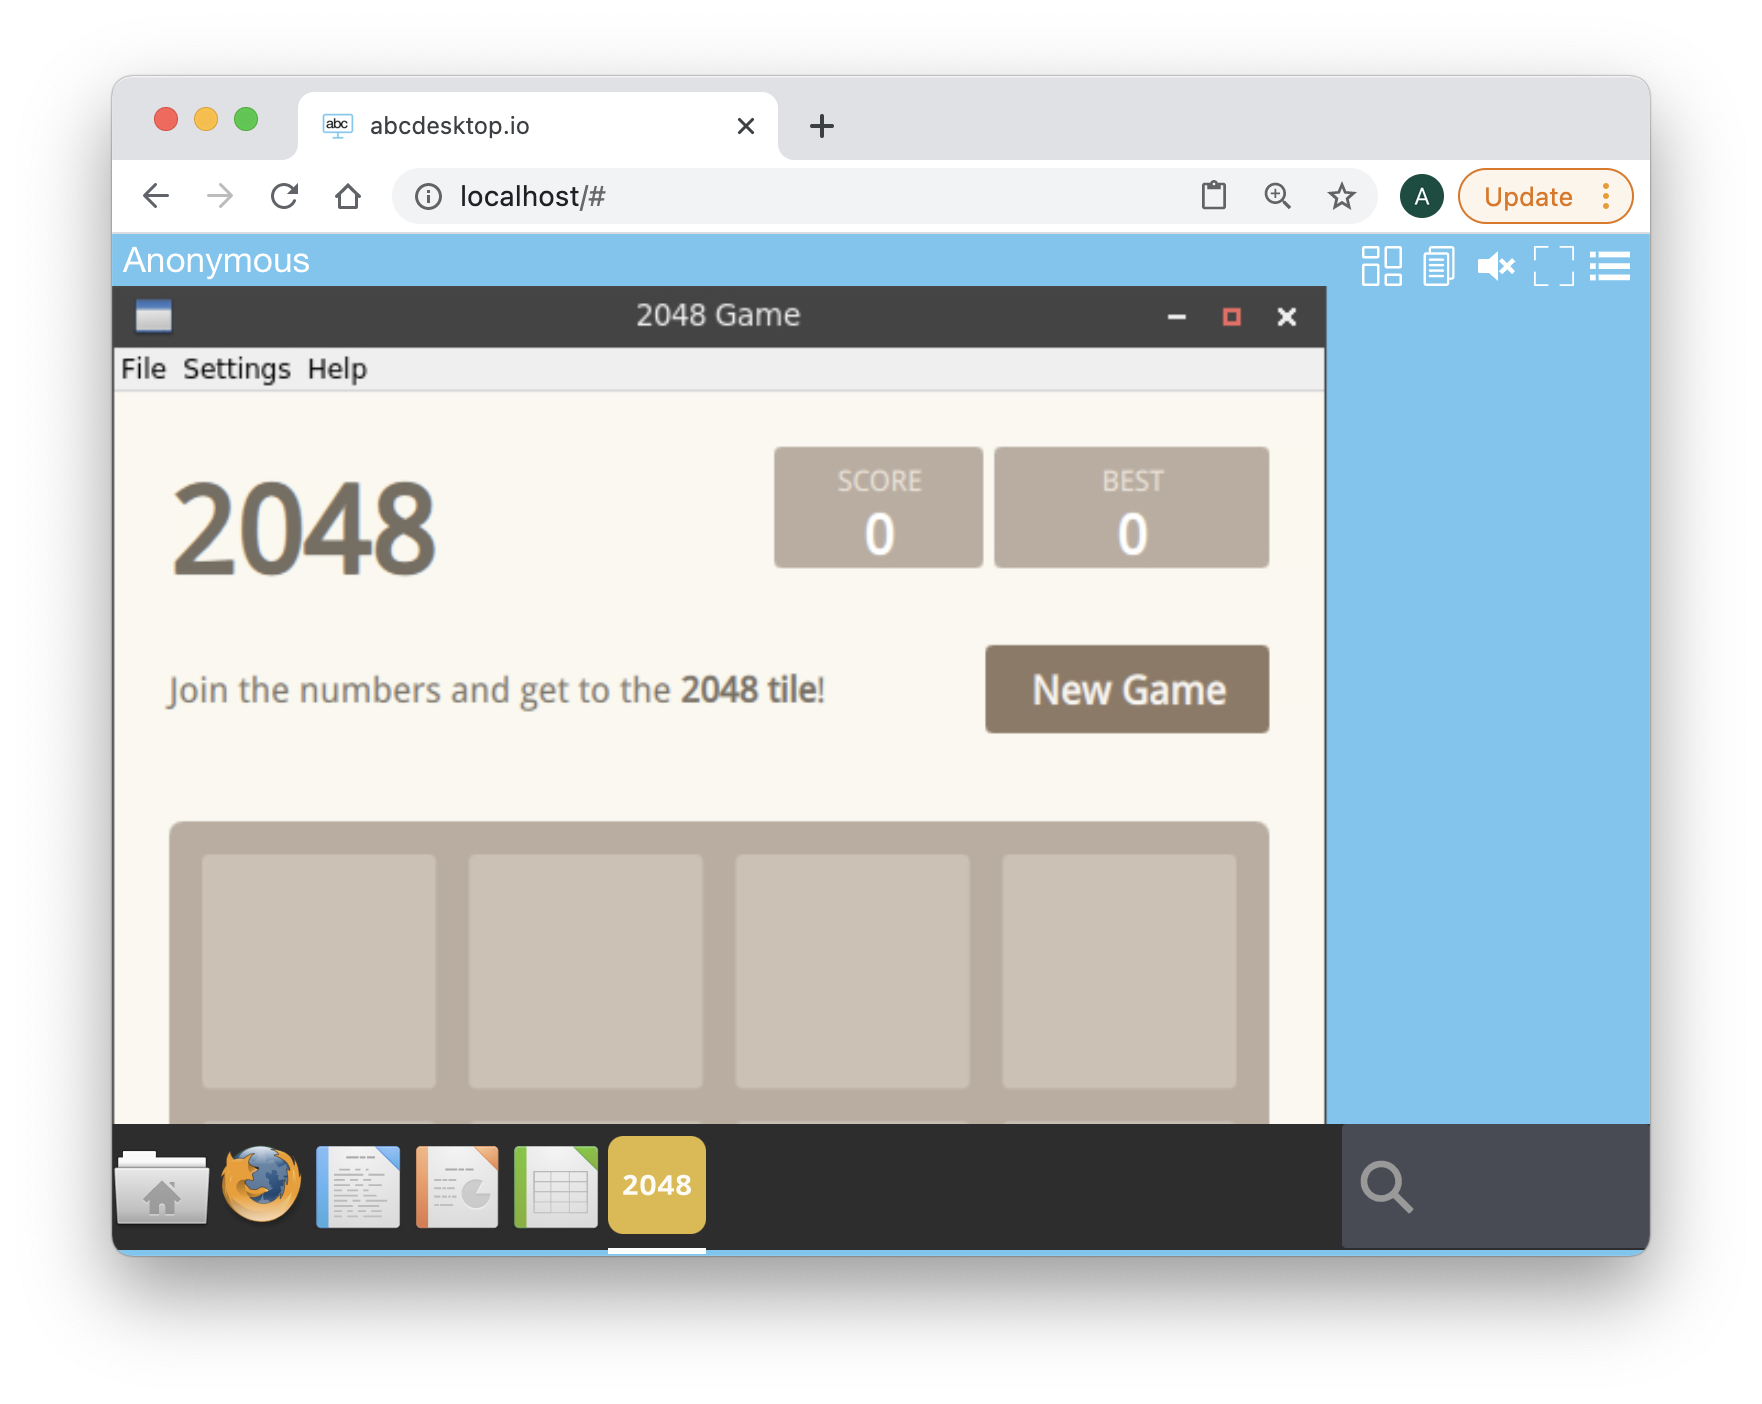 abcdesktop.io 2048 is running